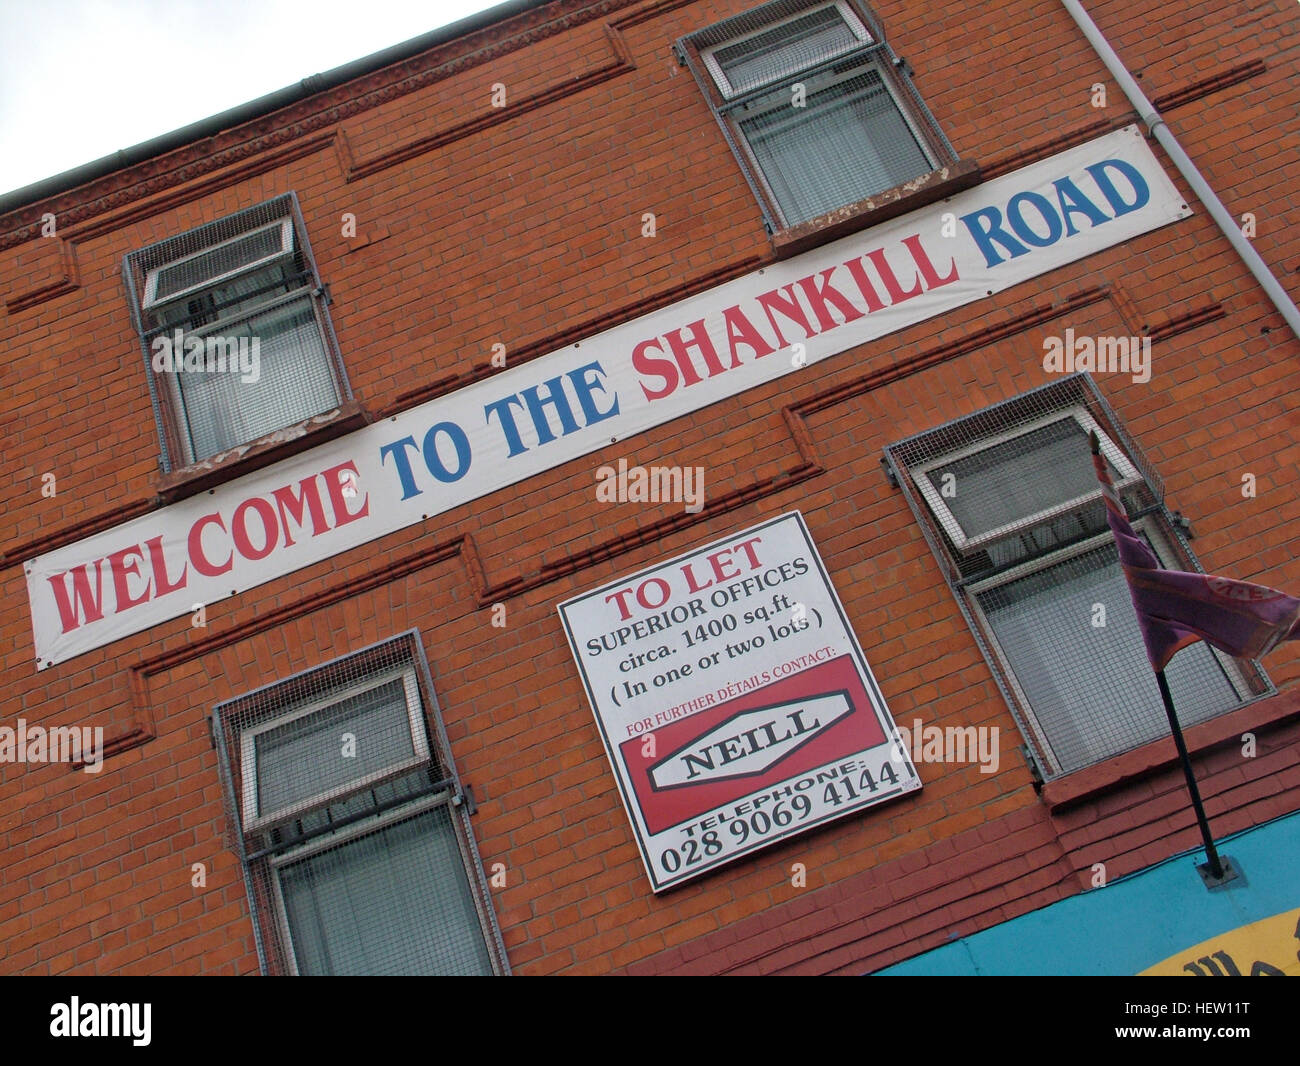 Shankill Road Wandbild - Willkommen in der Shankill Road, West Belfast, Nordirland, Vereinigtes Königreich Stockfoto